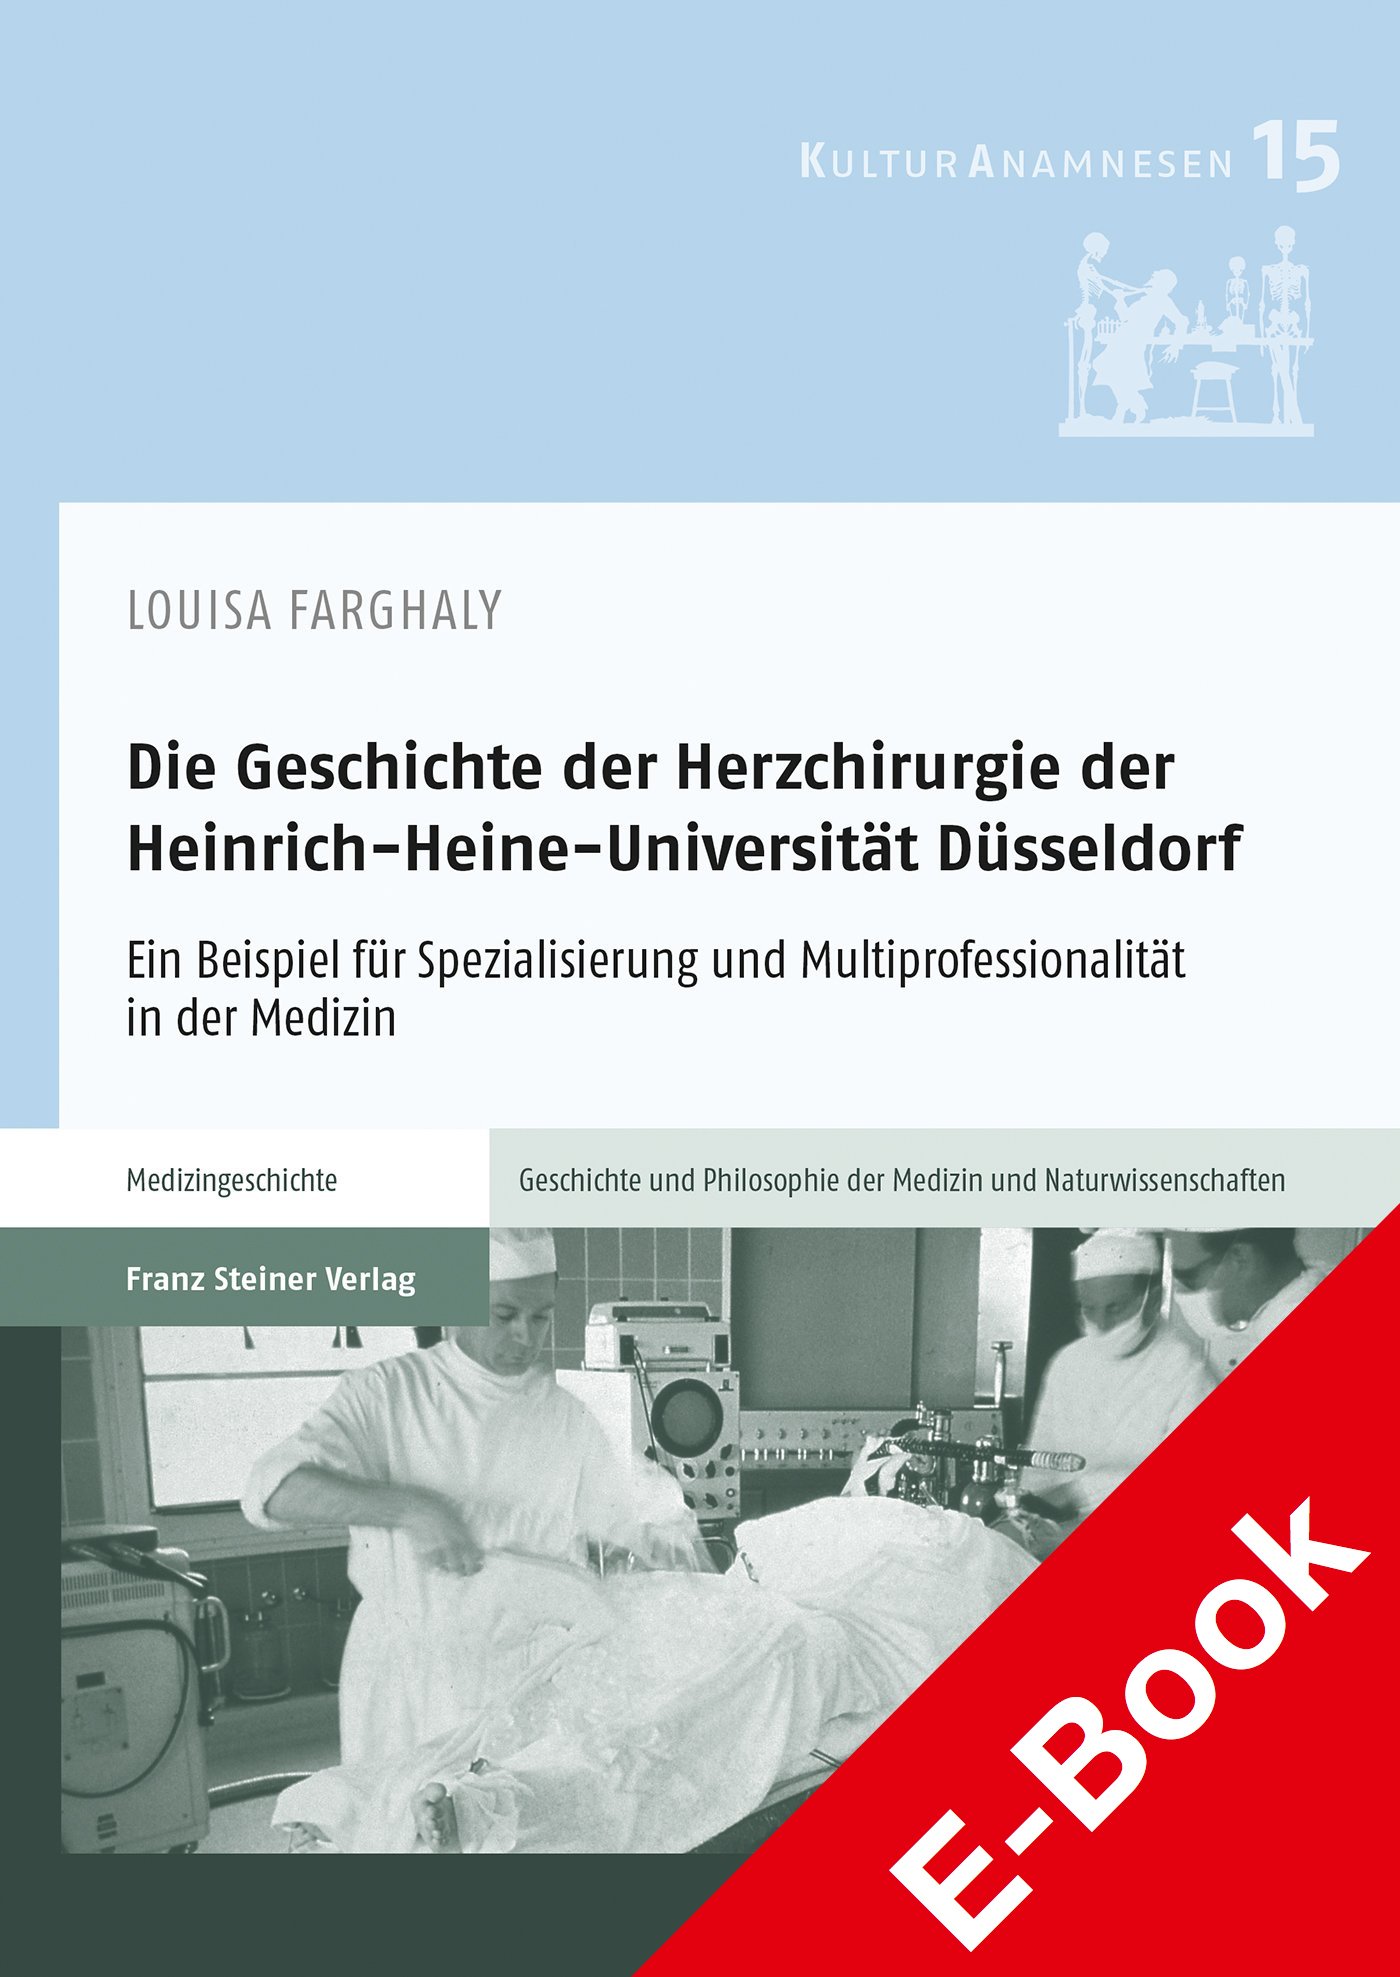 Die Geschichte der Herzchirurgie der Heinrich-Heine-Universität Düsseldorf